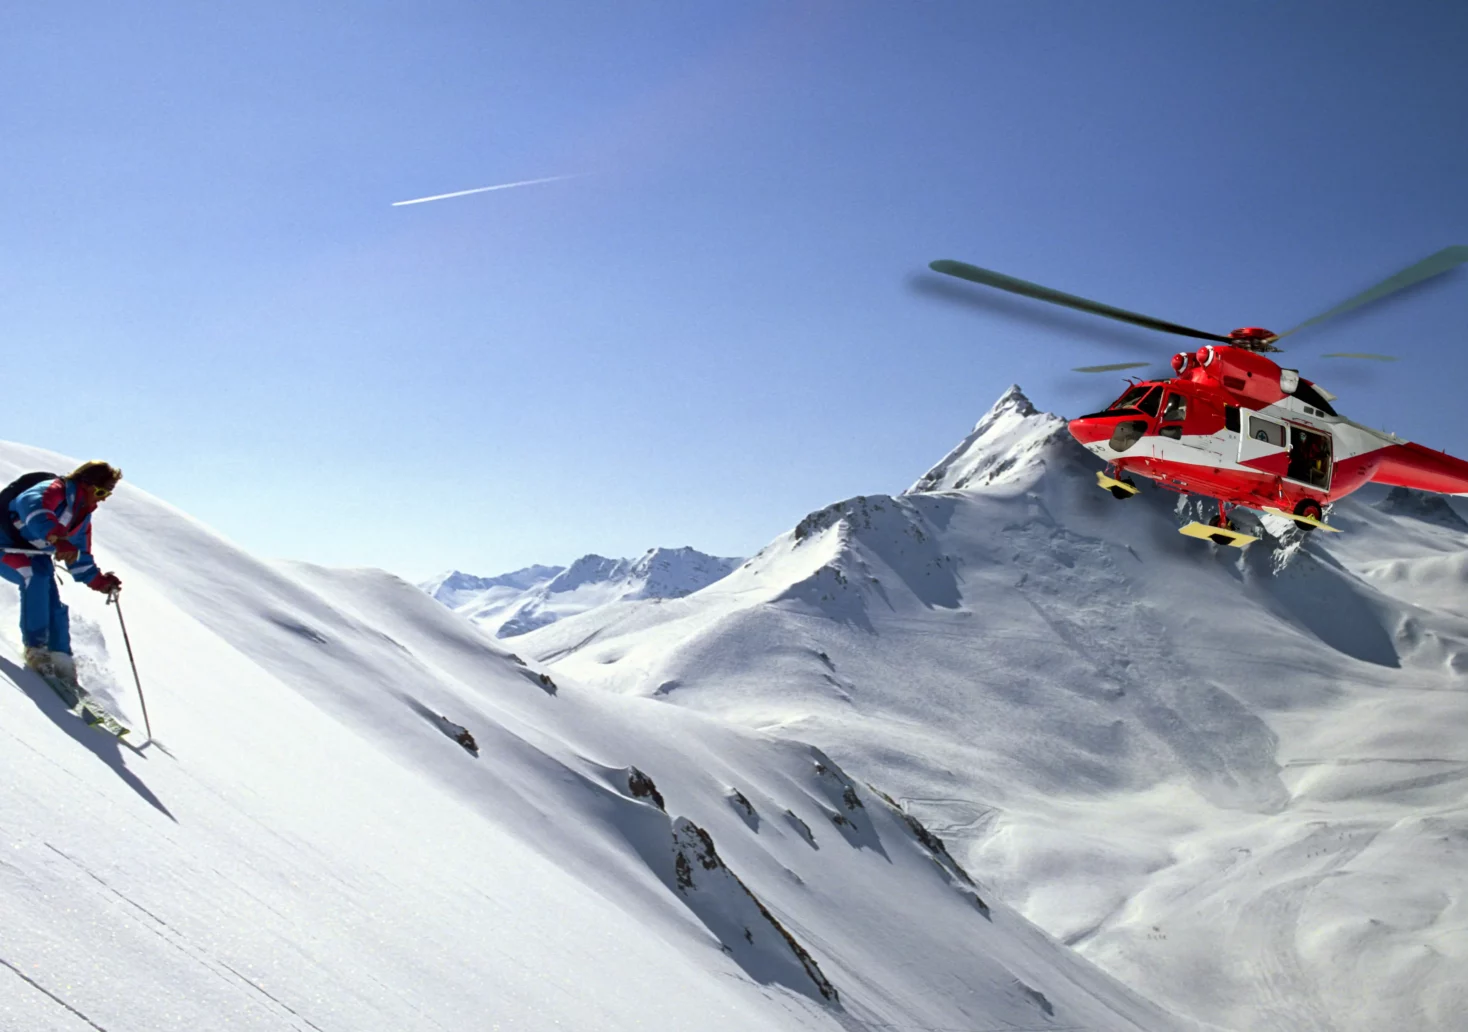 Steiler Hang wurde zum Verhängnis: Skifahrerin stürzte 25 Meter ab